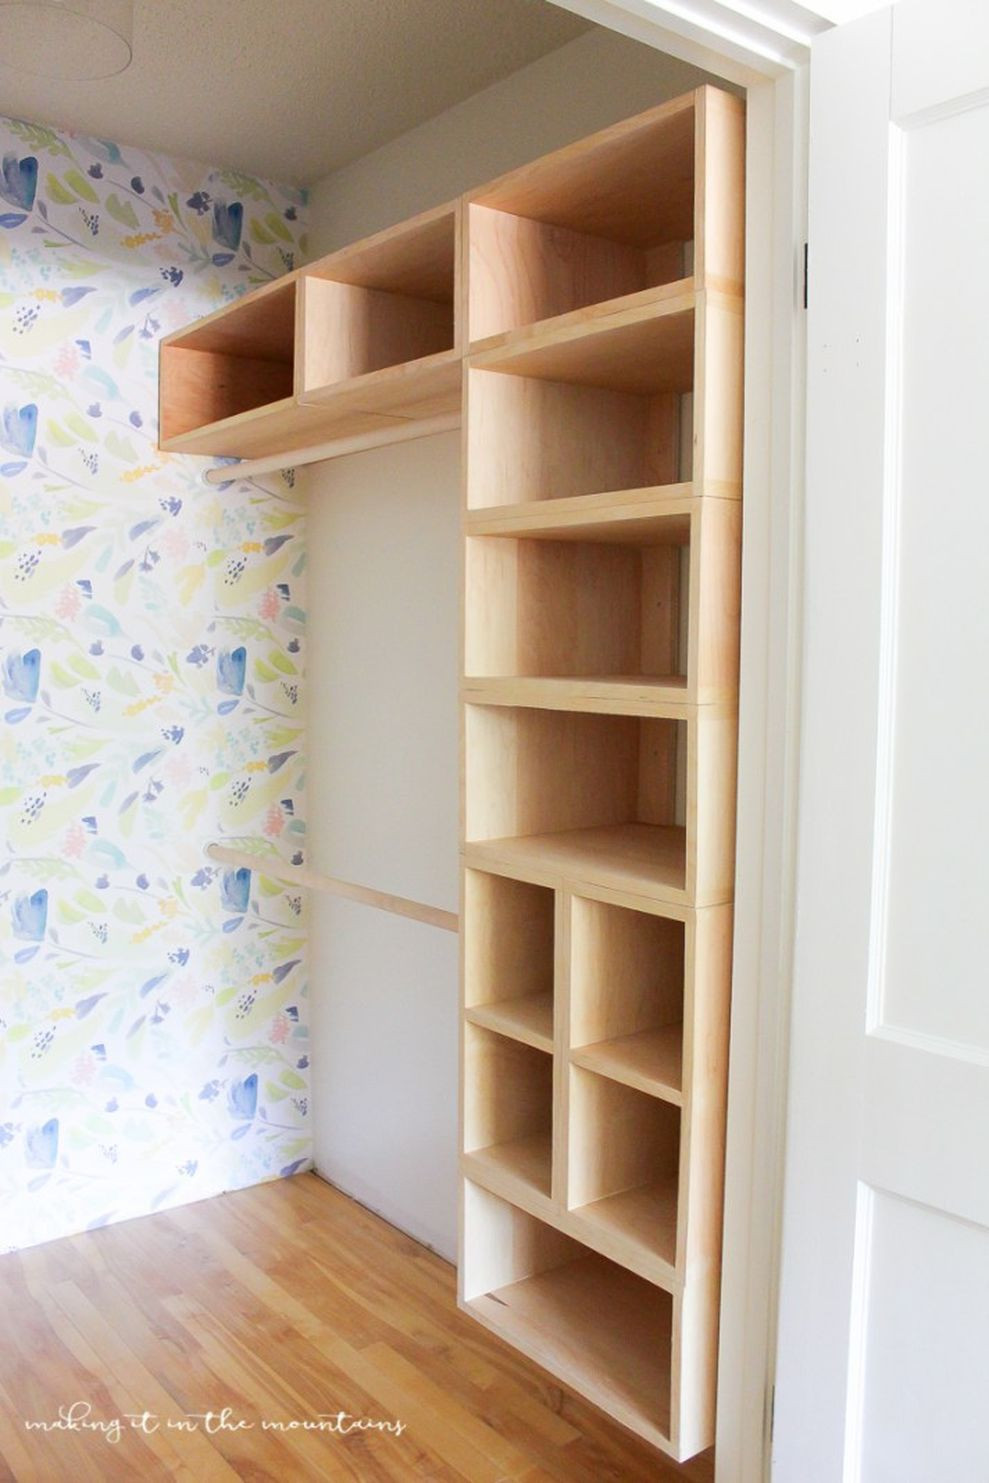 DIY Closet Shelves Plans
 71 Easy and Affordable DIY Wood Closet Shelves Ideas